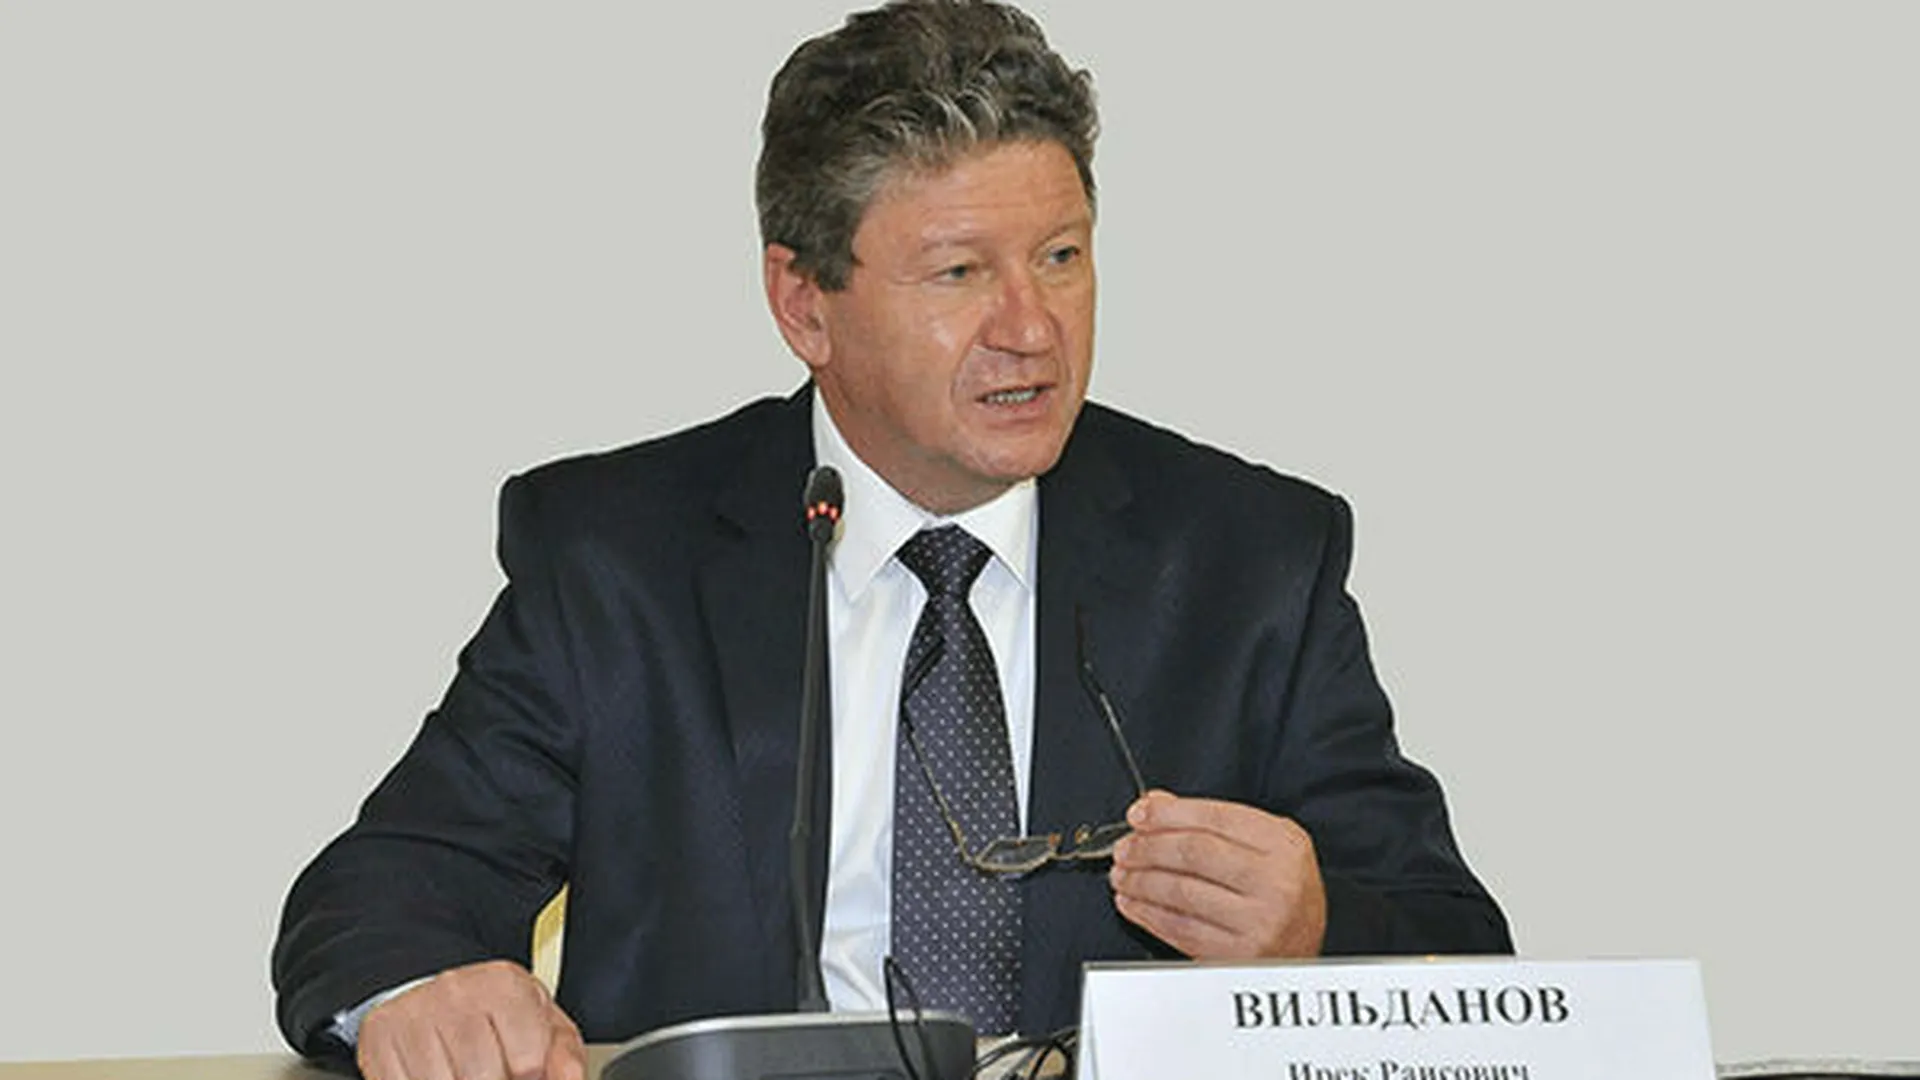 Вильданов призвал жителей Барвихи проголосовать 24 апреля